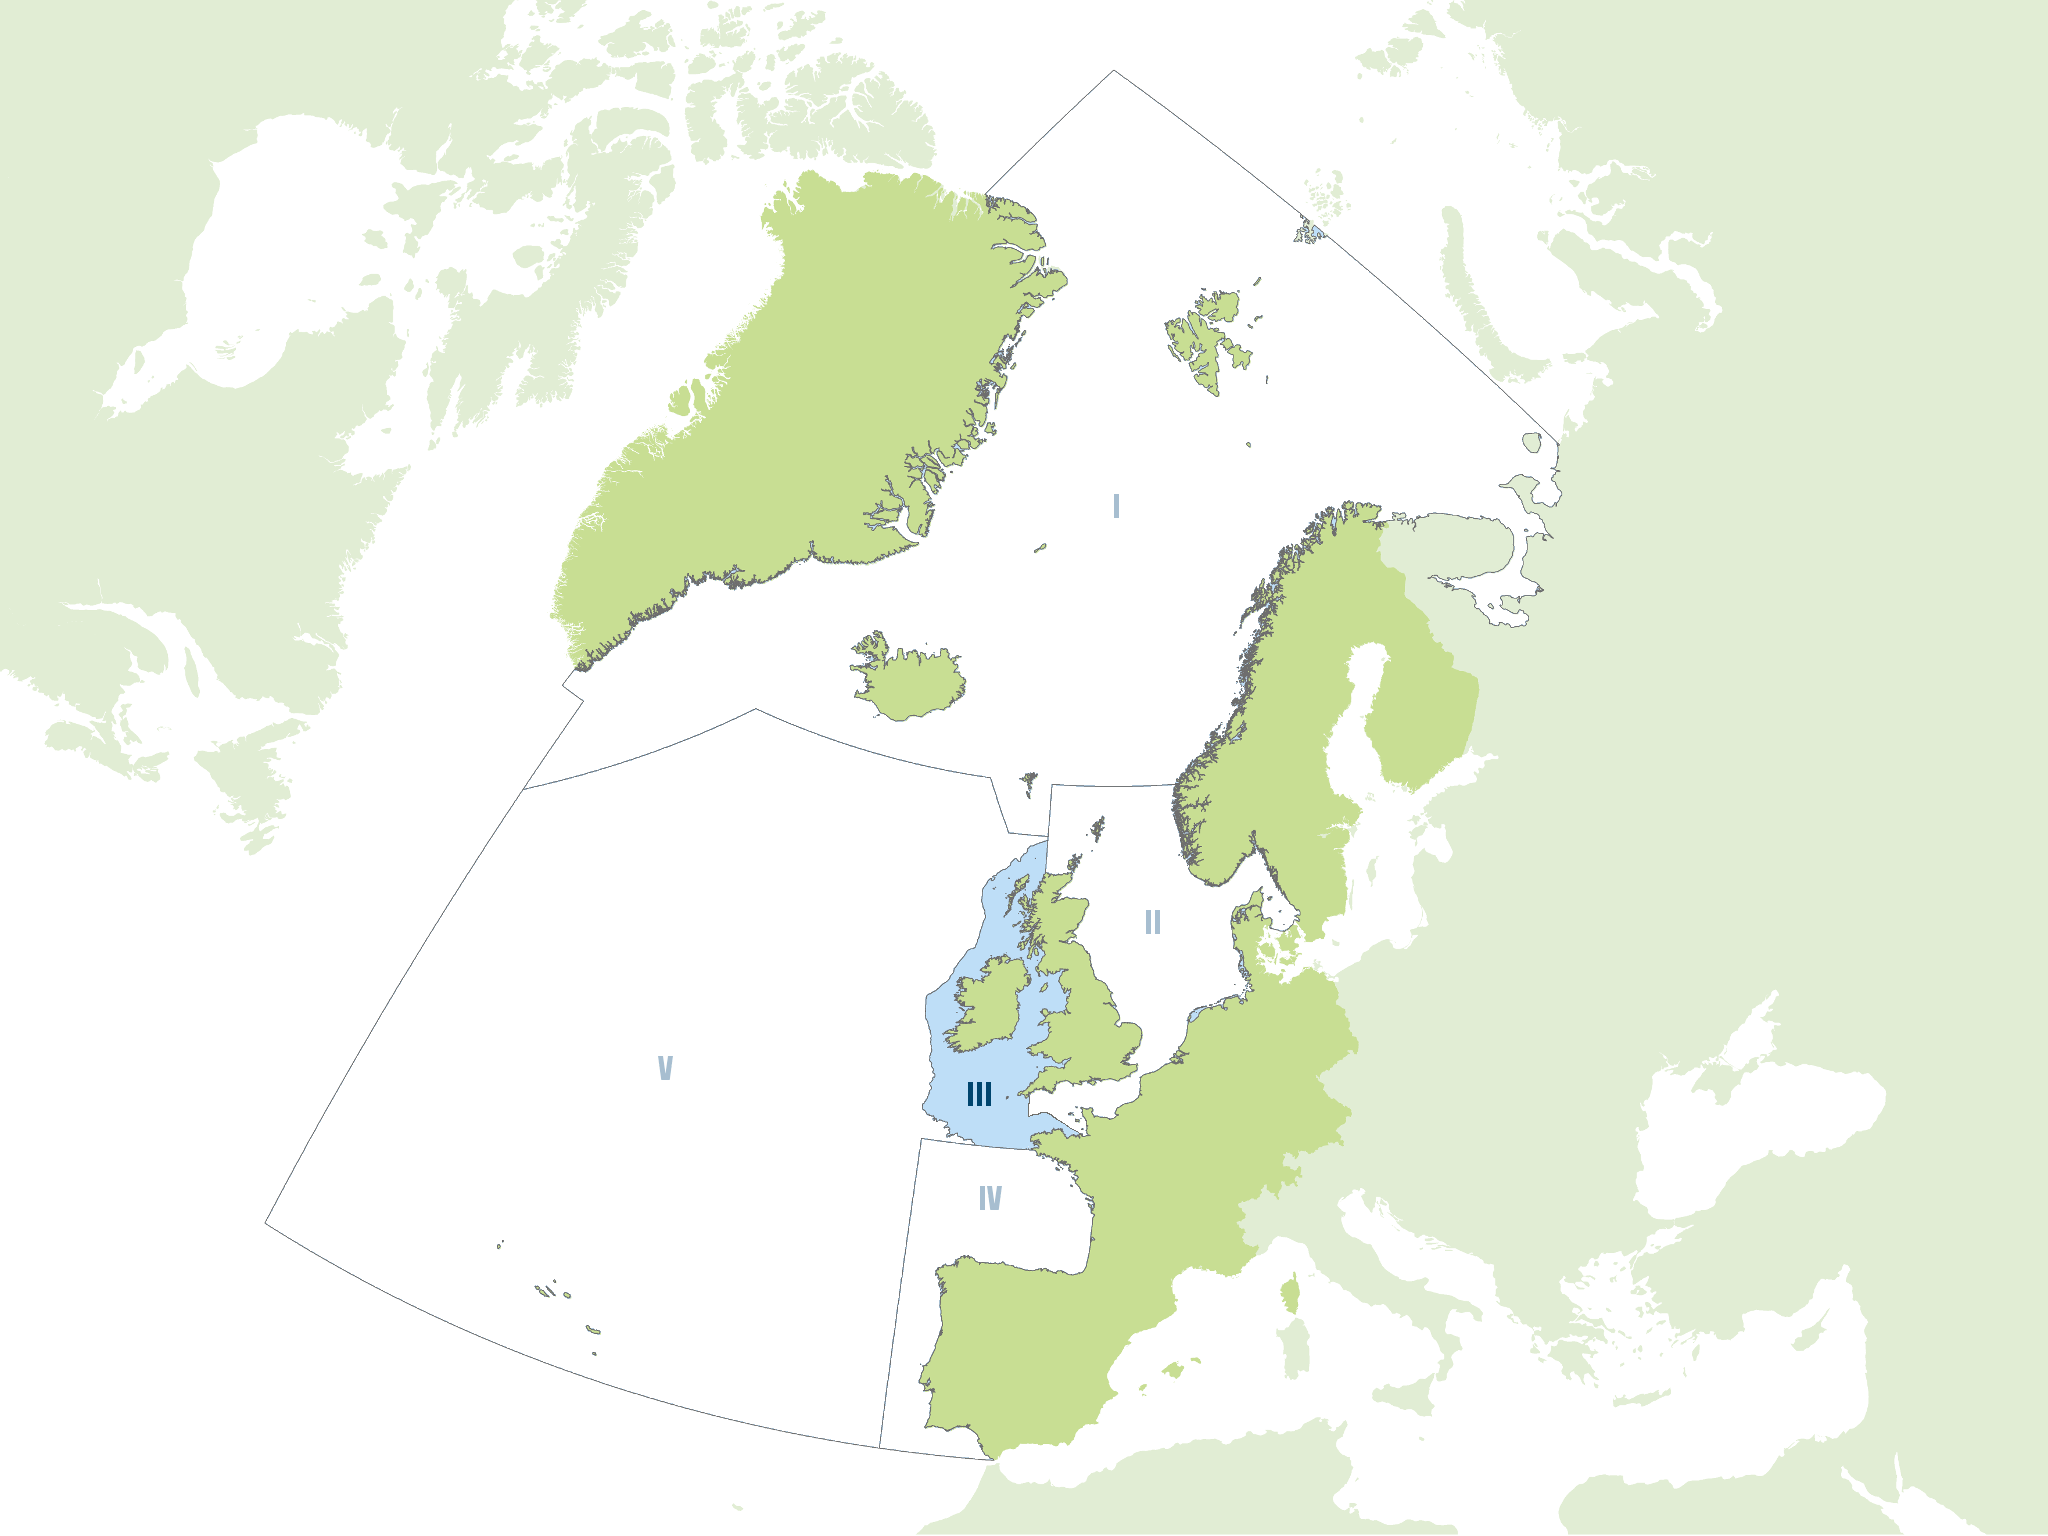 Region III: Celtic Seas